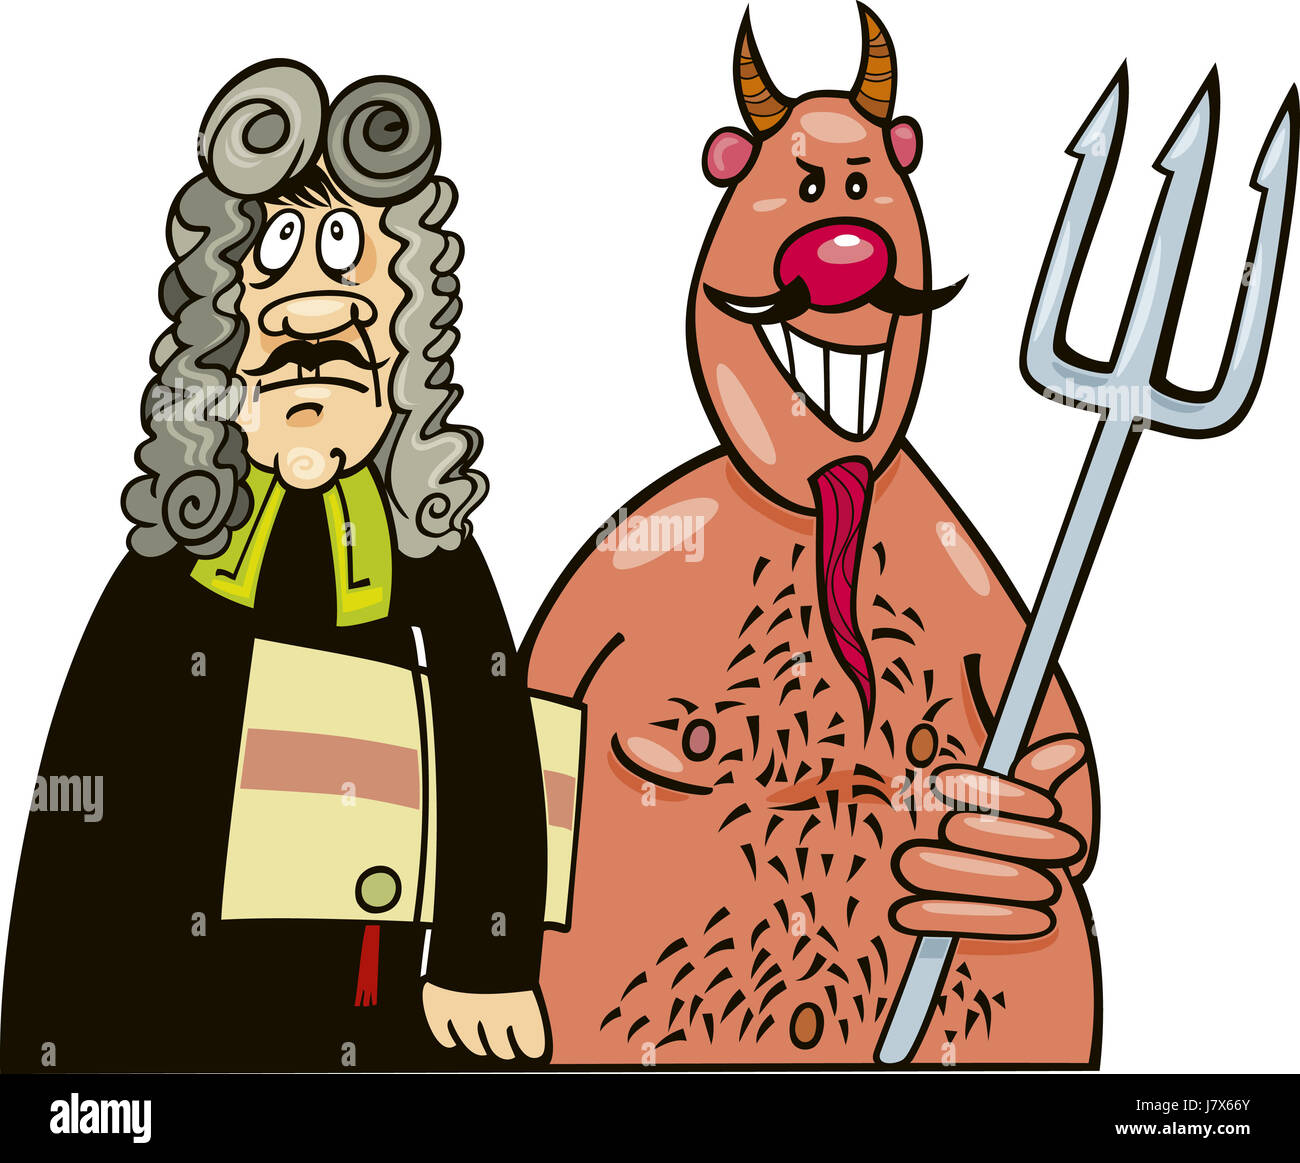 Avocat du diable satan illustration cartoon comics rire rire rire fourche twit Banque D'Images